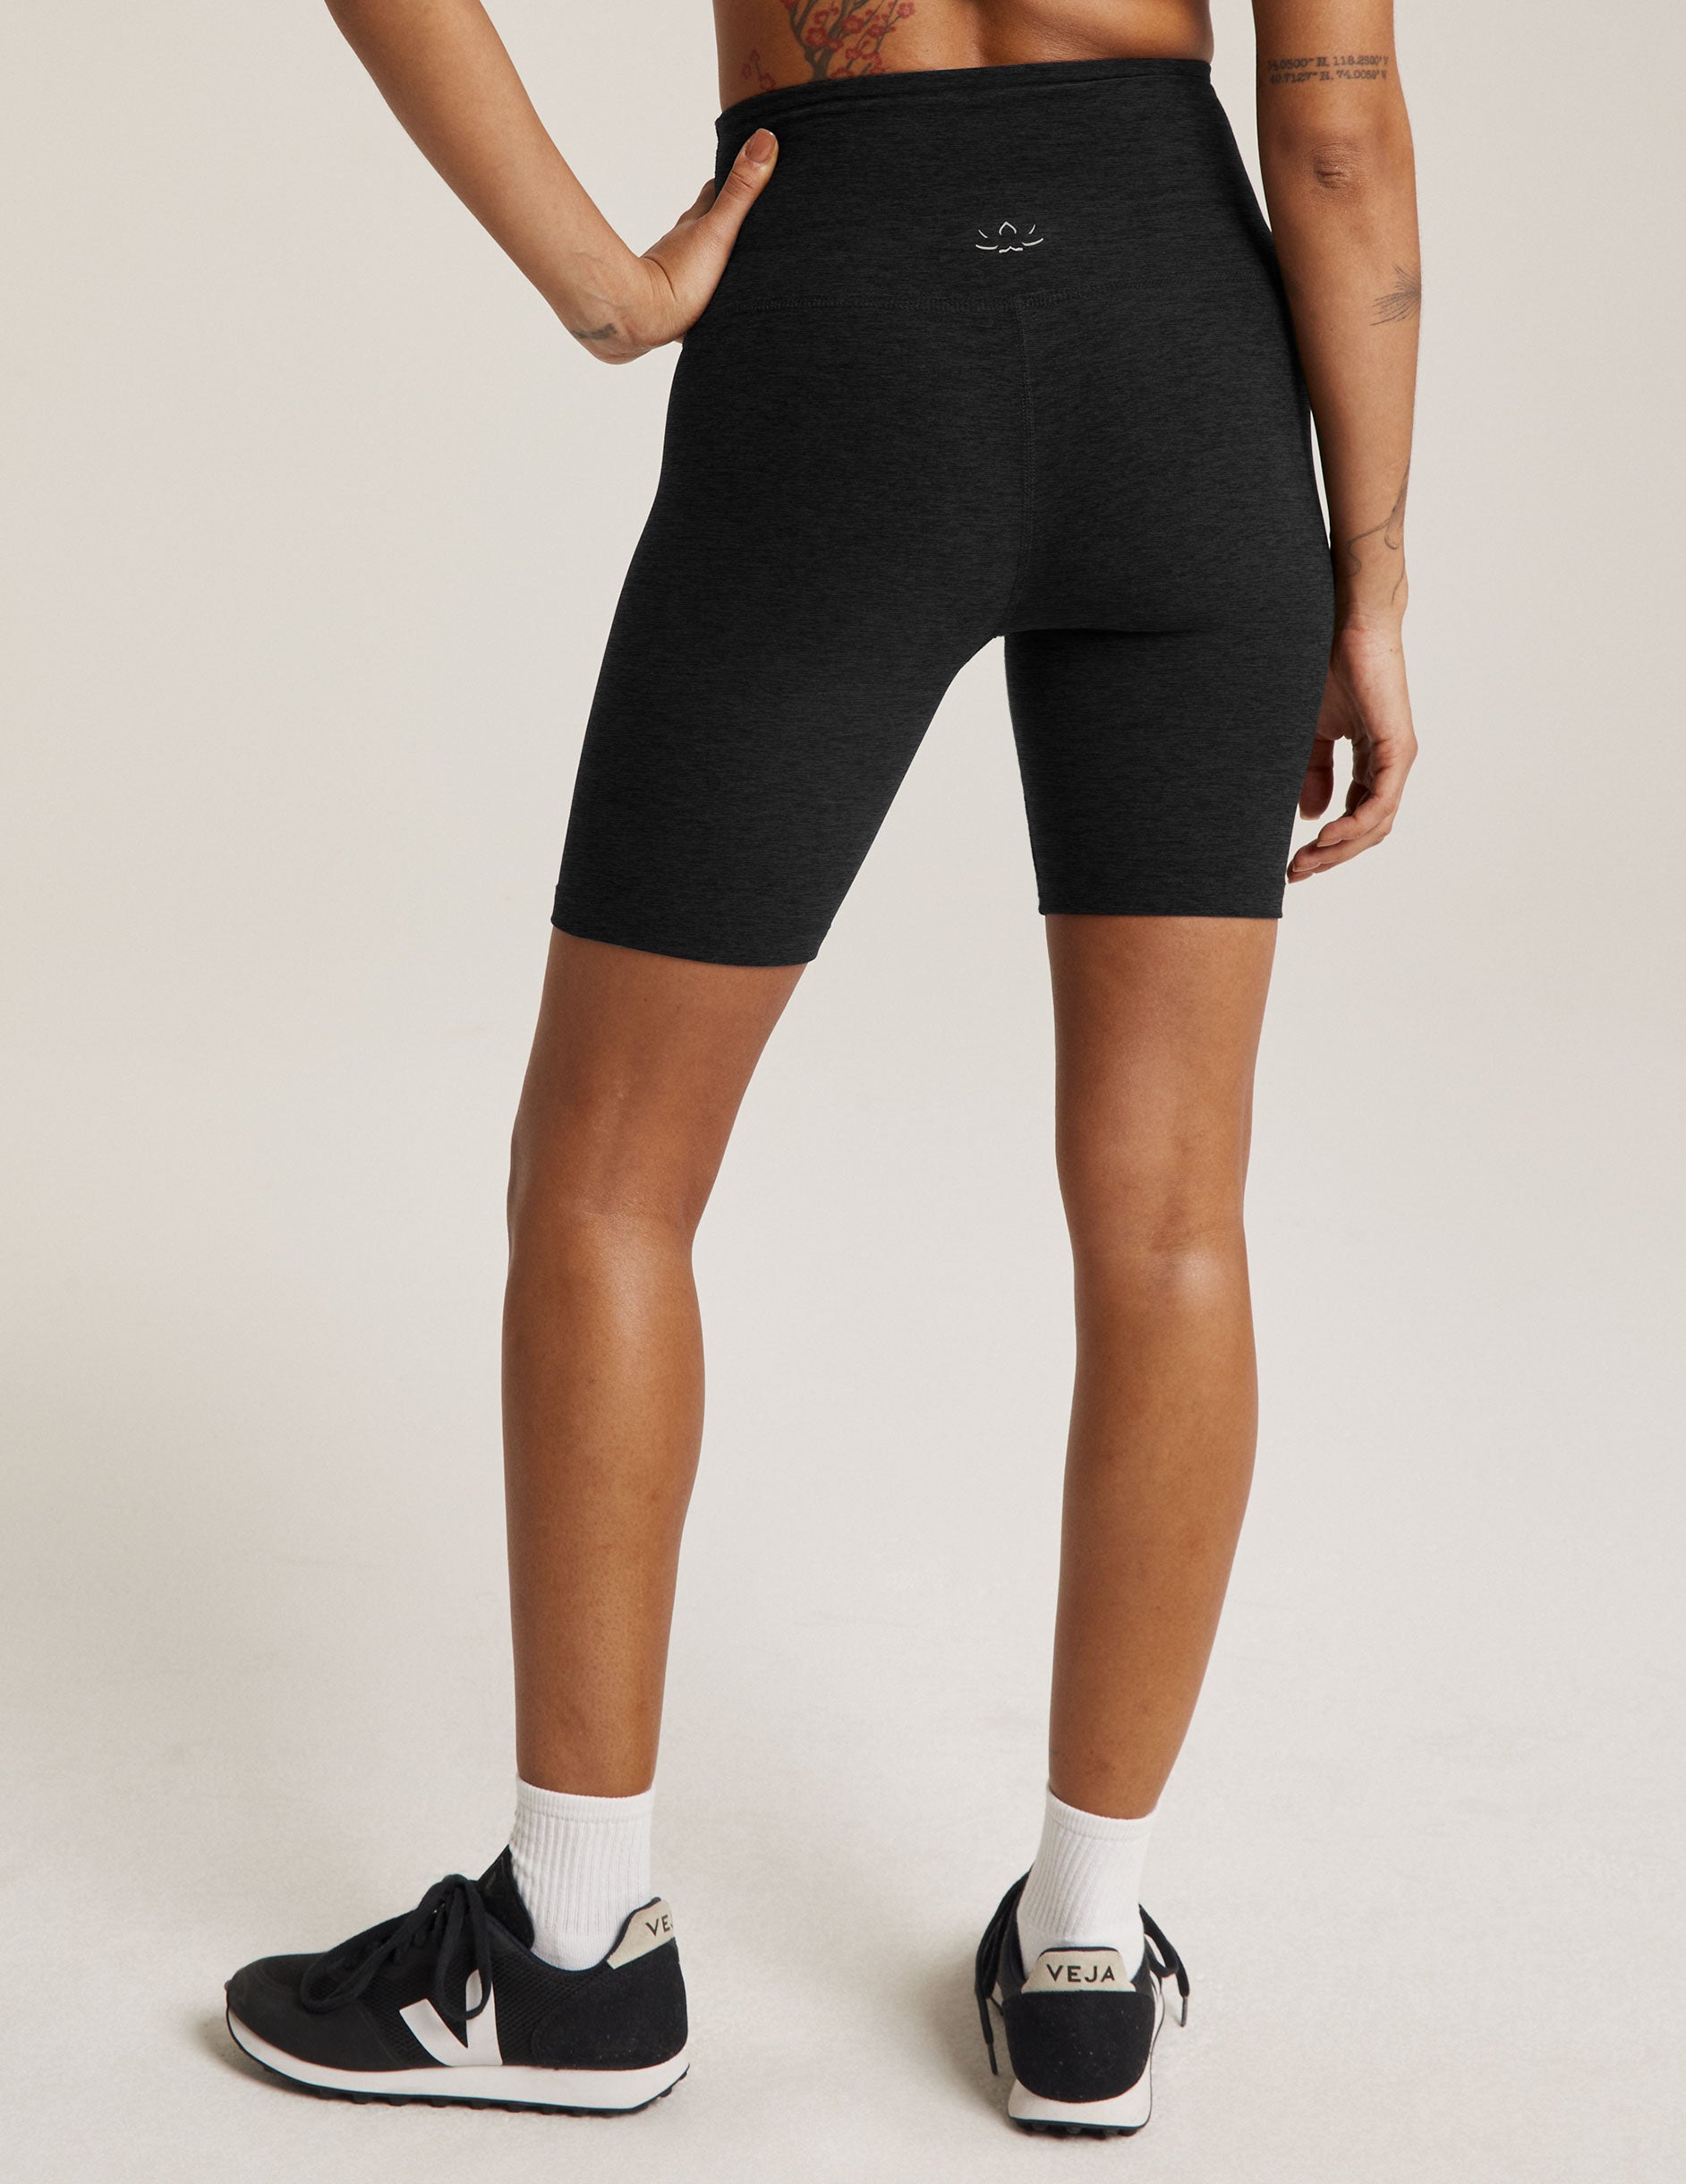 Biker Shorts for Women 7.5' 8' High Waisted Workout Running